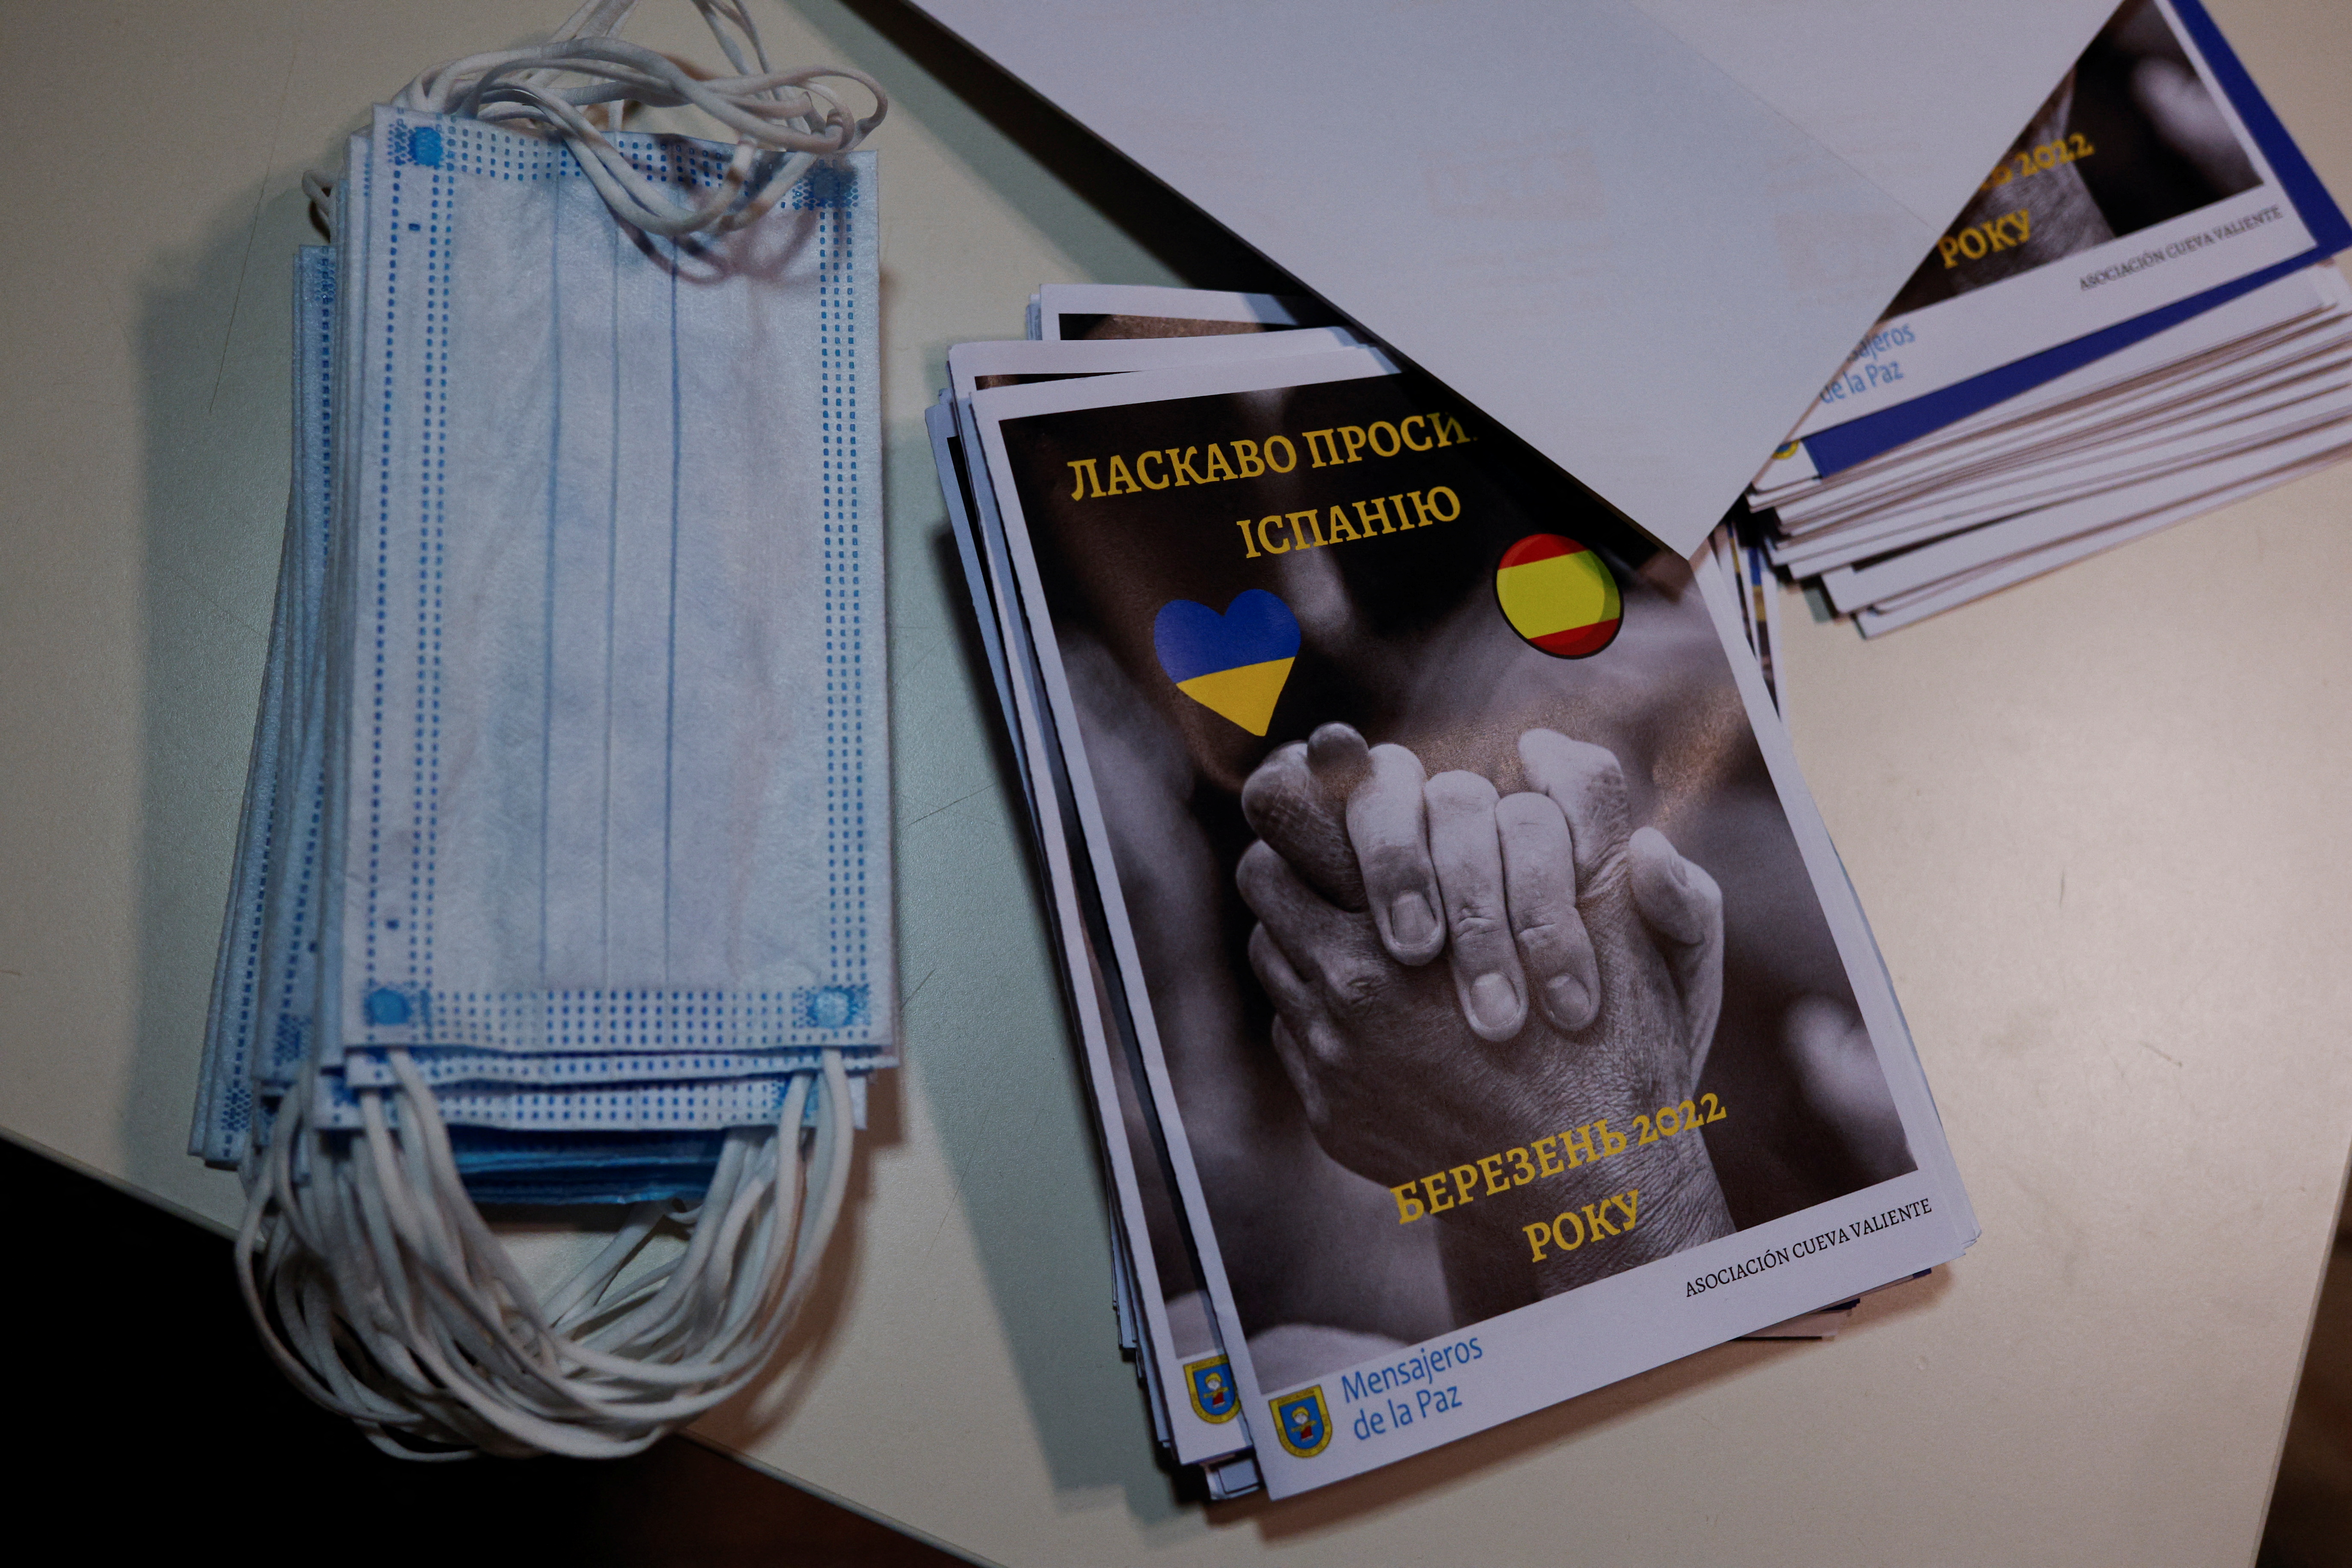 Маски и брошюры в испанском такси, которое забирало украинцев из Польши в Испанию. Фото: REUTERS/Susana Vera